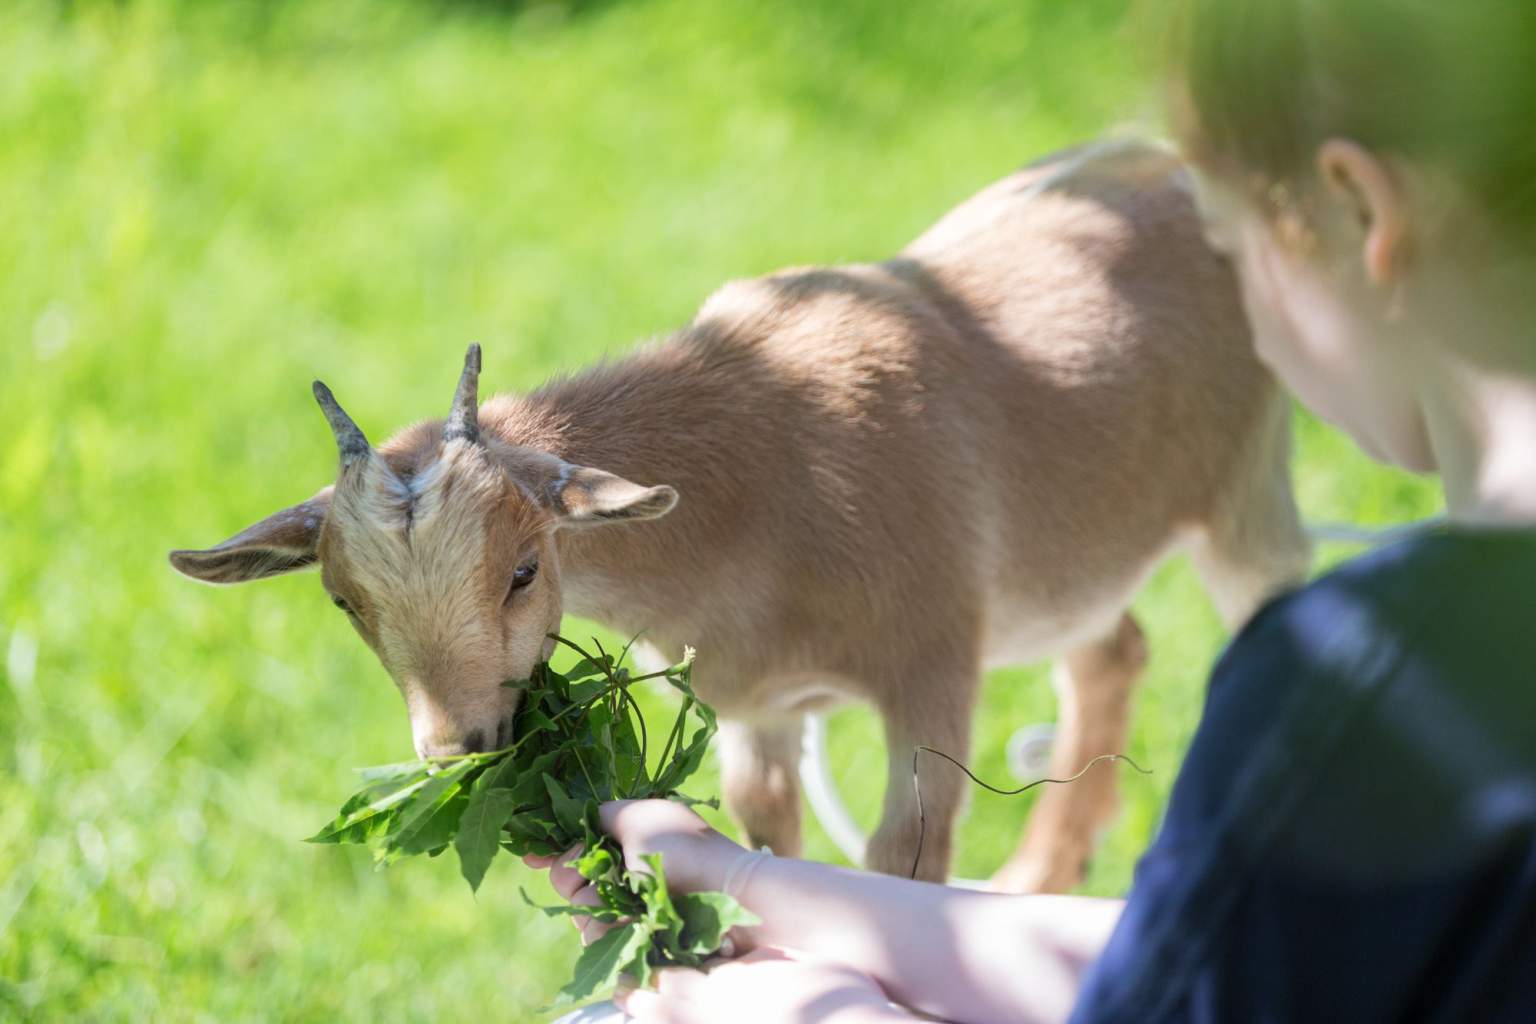 A pygmy goat